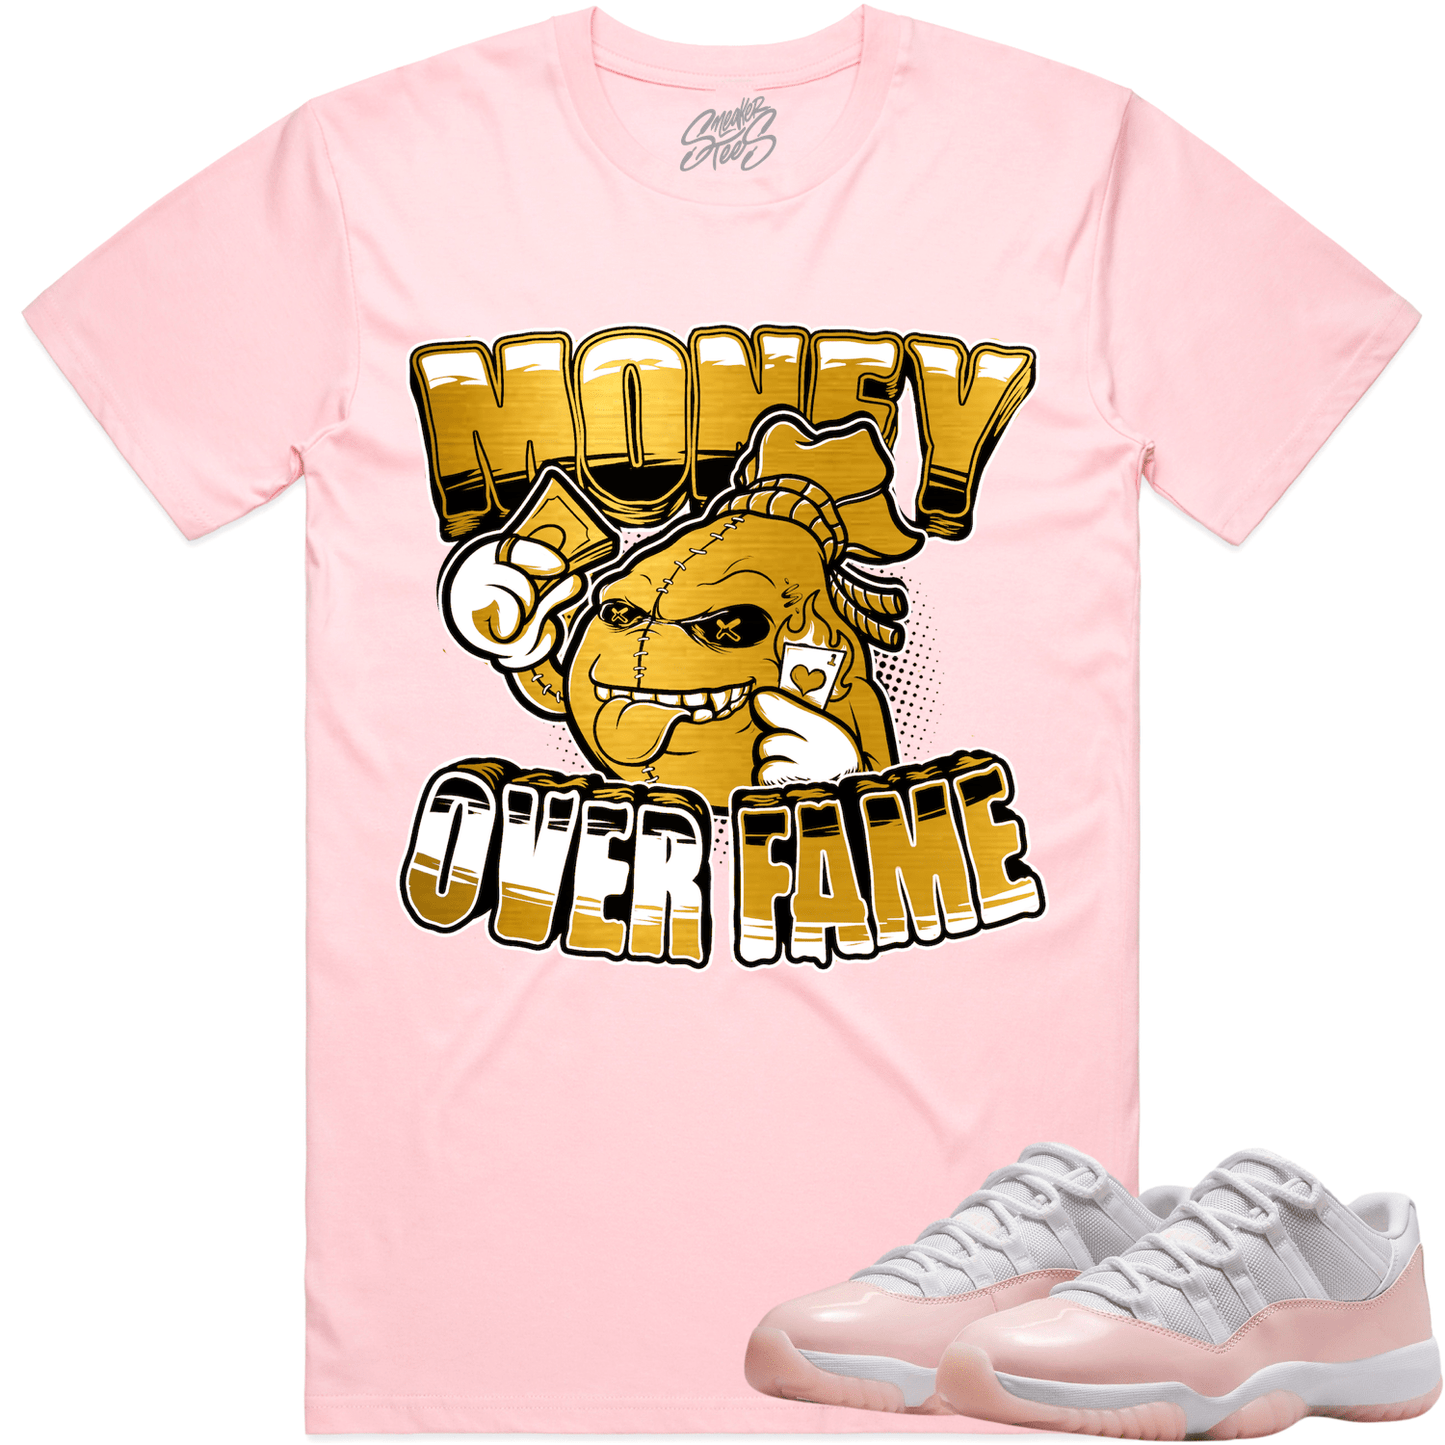 Legend Pink 11s Shirt - Jordan 11 Low Pink Sneaker Tees - Money Fame